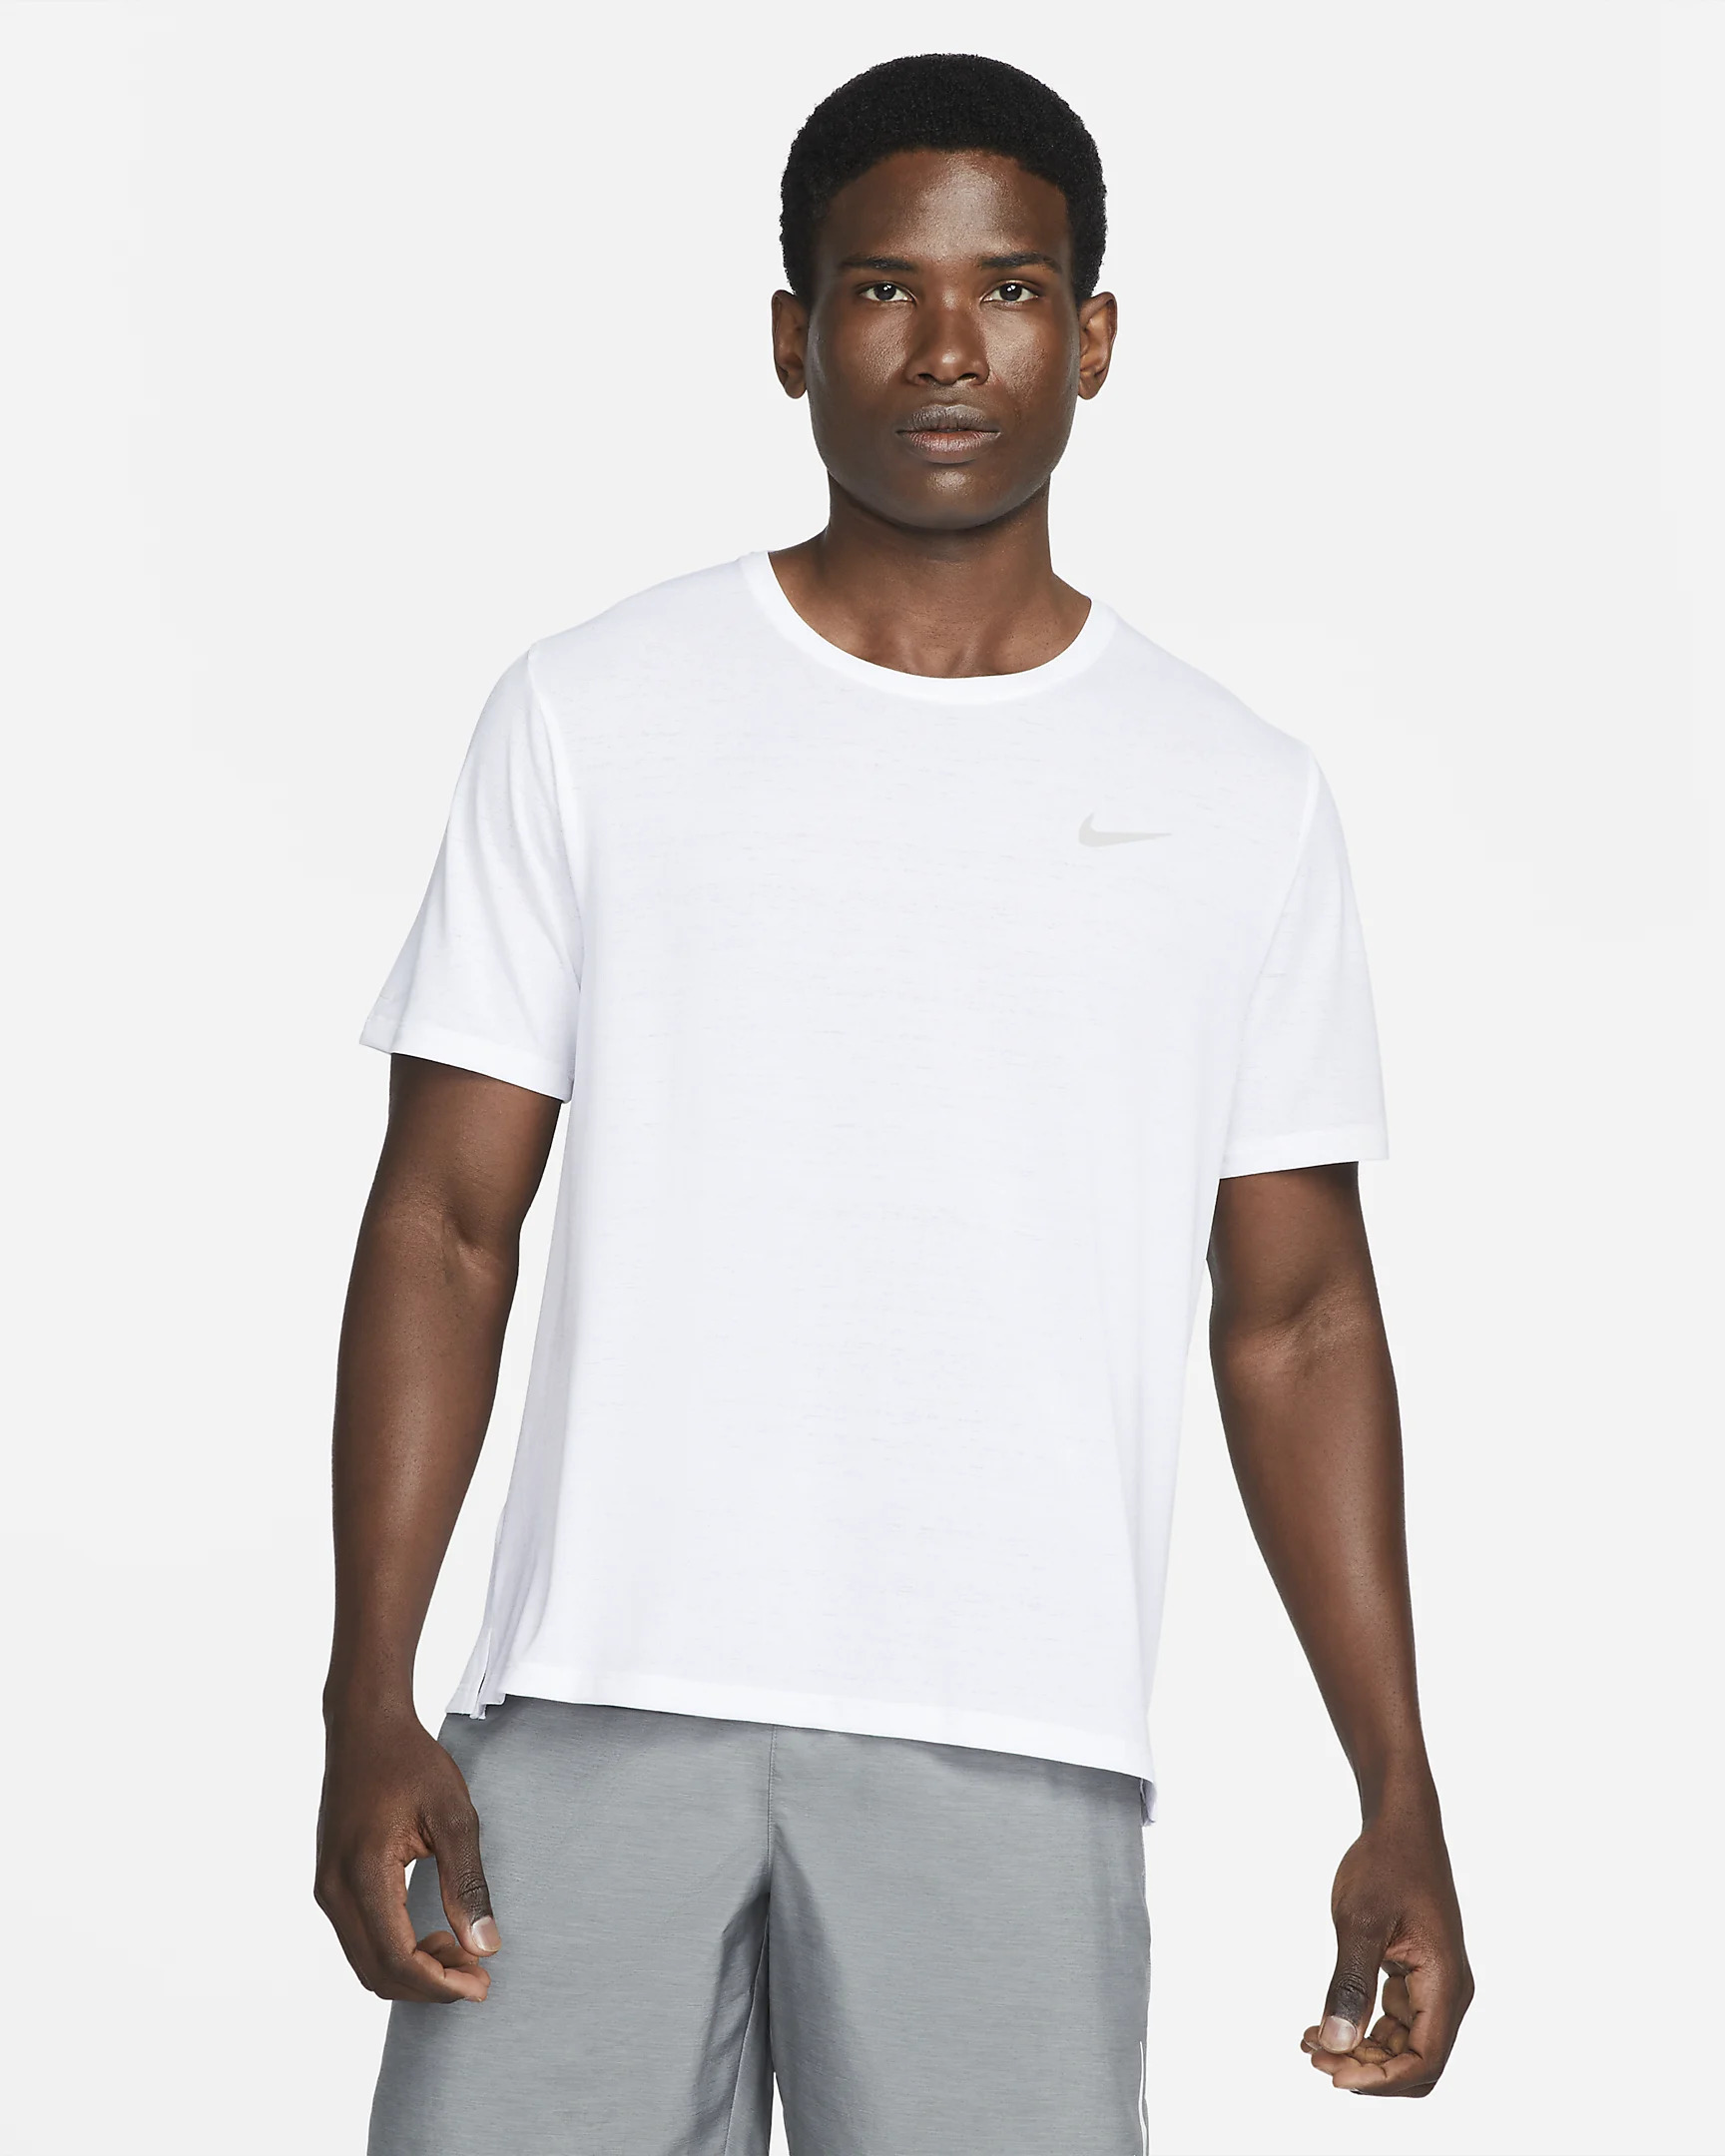 Nike Running White 'Miler' T-Shirt | Rainy Days